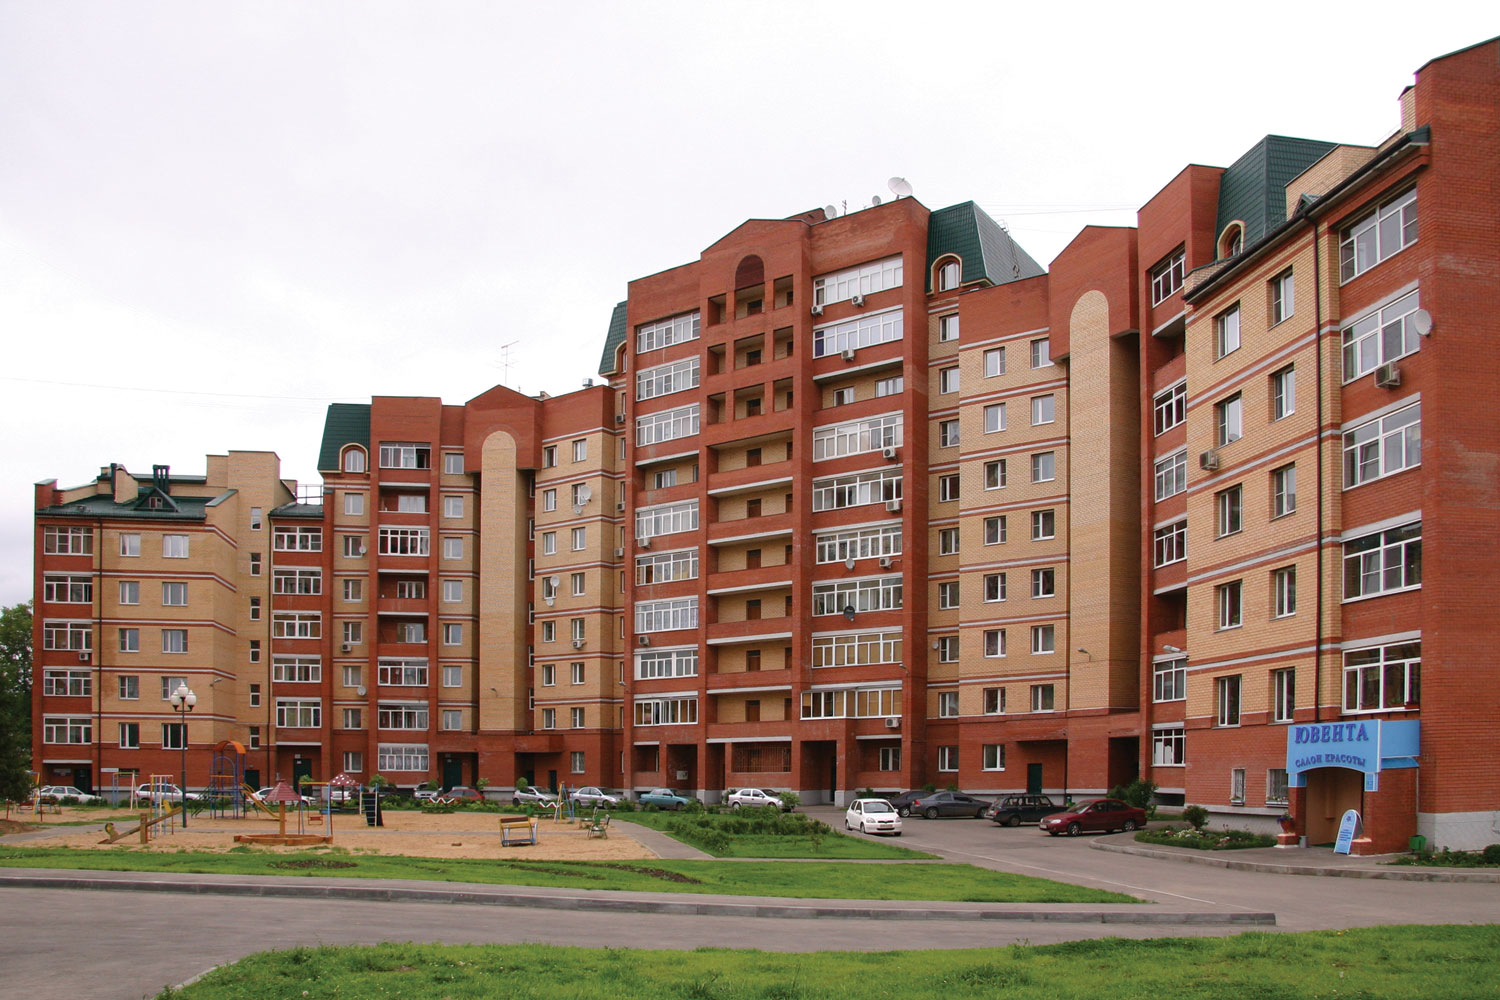 Многоквартирный жилой дом россия